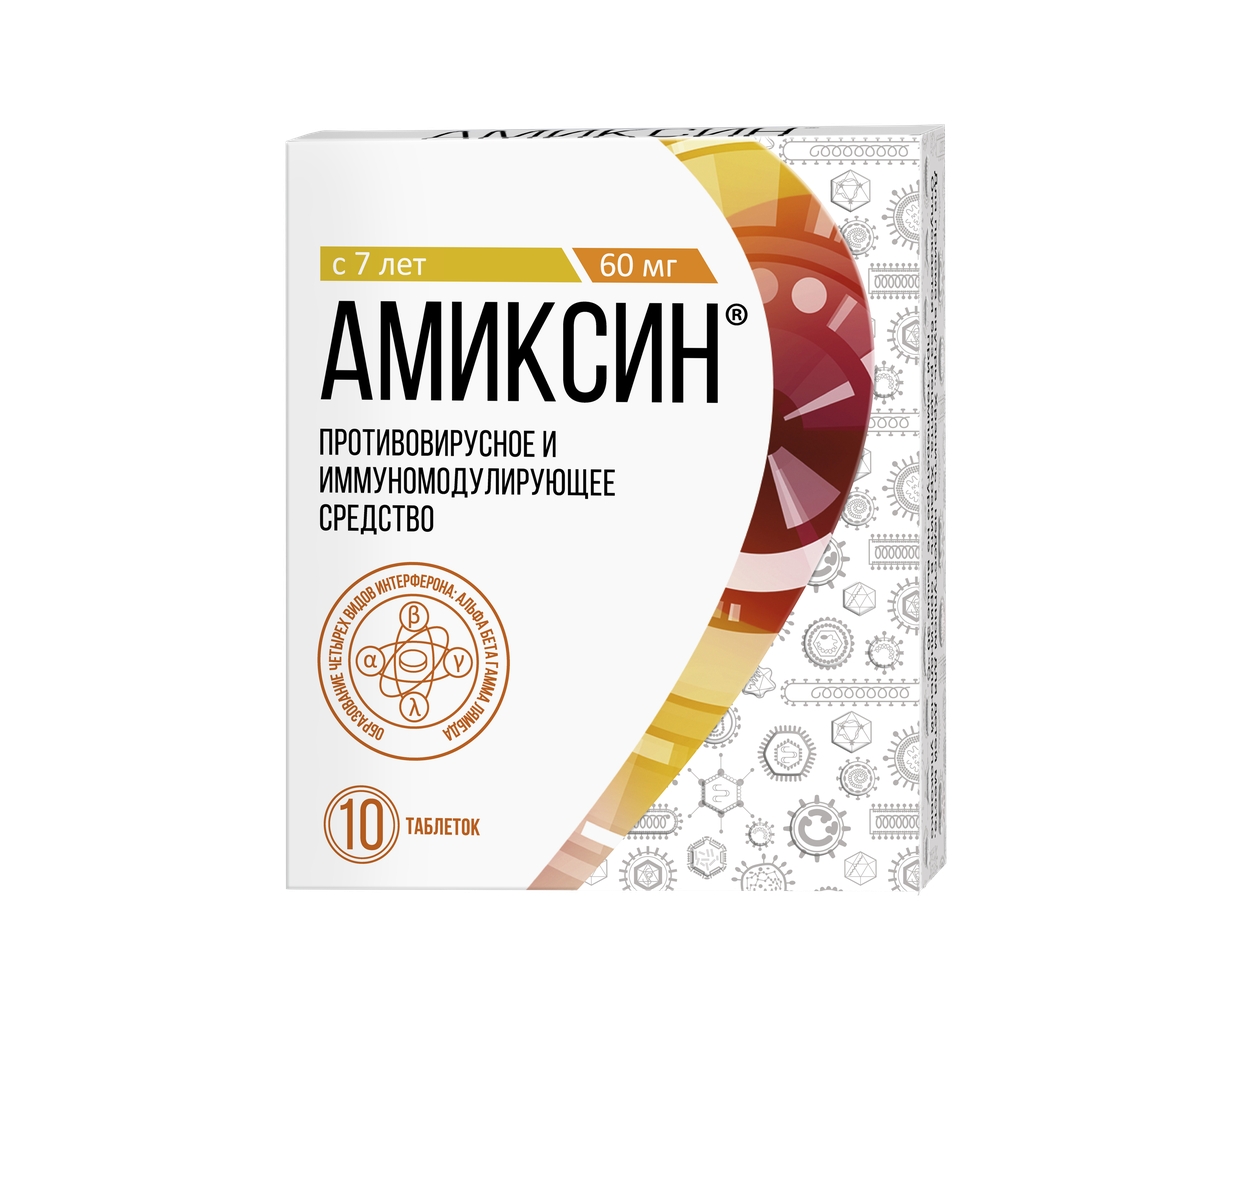 Амиксин (таблетки, 10 шт, 60 мг, для приема внутрь) - цена,  .